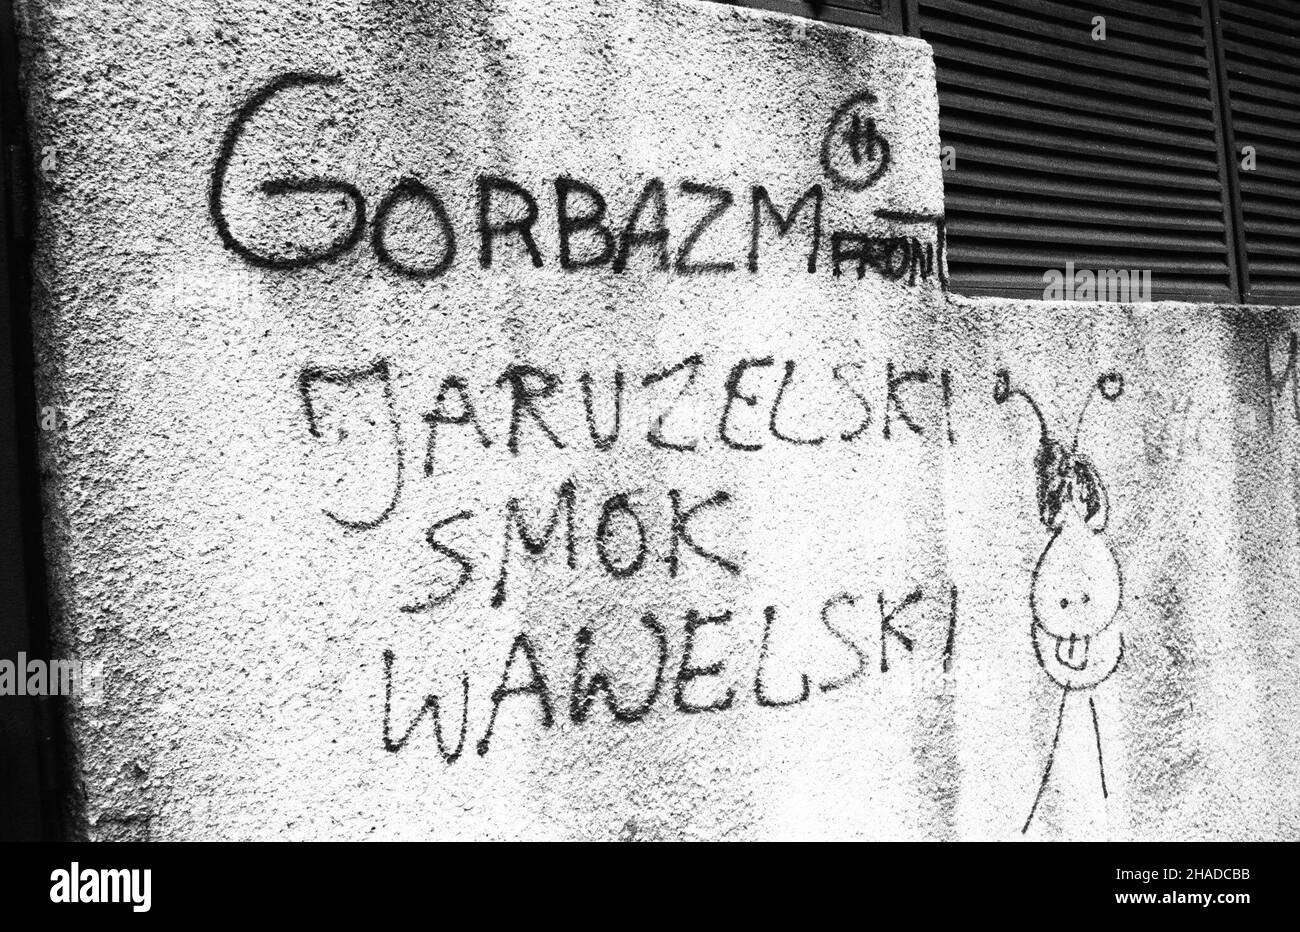 Warszawa, 12.1990. Pojawi³a siê nowa forma wypowiedzi publicznej - graffiti polityczne. Nz. Napis 'Jaruzelski smok wawelski'. (ptr) PAP/CAF/Jab³onowski     Warsaw, 12.1990. A new form of expression appeared - political graffitti. Pictured: graffitti on the wall riming reading 'Jaruzelski smok wawelski' (Jaruzelski, Wawel dragon; 'Jaruzelski' rhymes with 'wawelski'). (ptr) PAP/CAF/Jablonowski Stock Photo